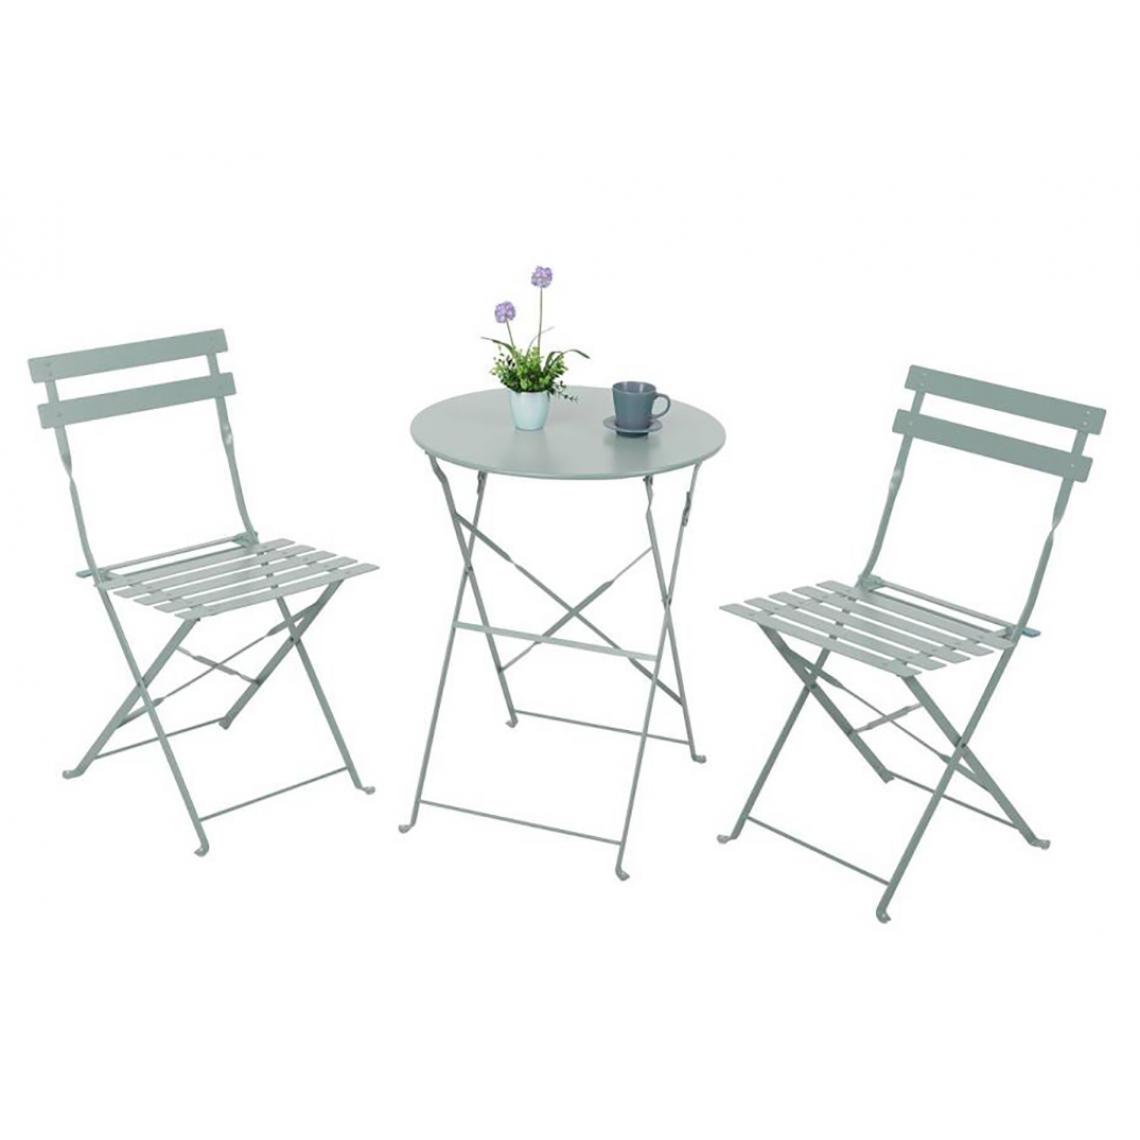 Pegane - Ensemble de jardin 1 table + 2 chaises en acier coloris gris - Ensembles tables et chaises